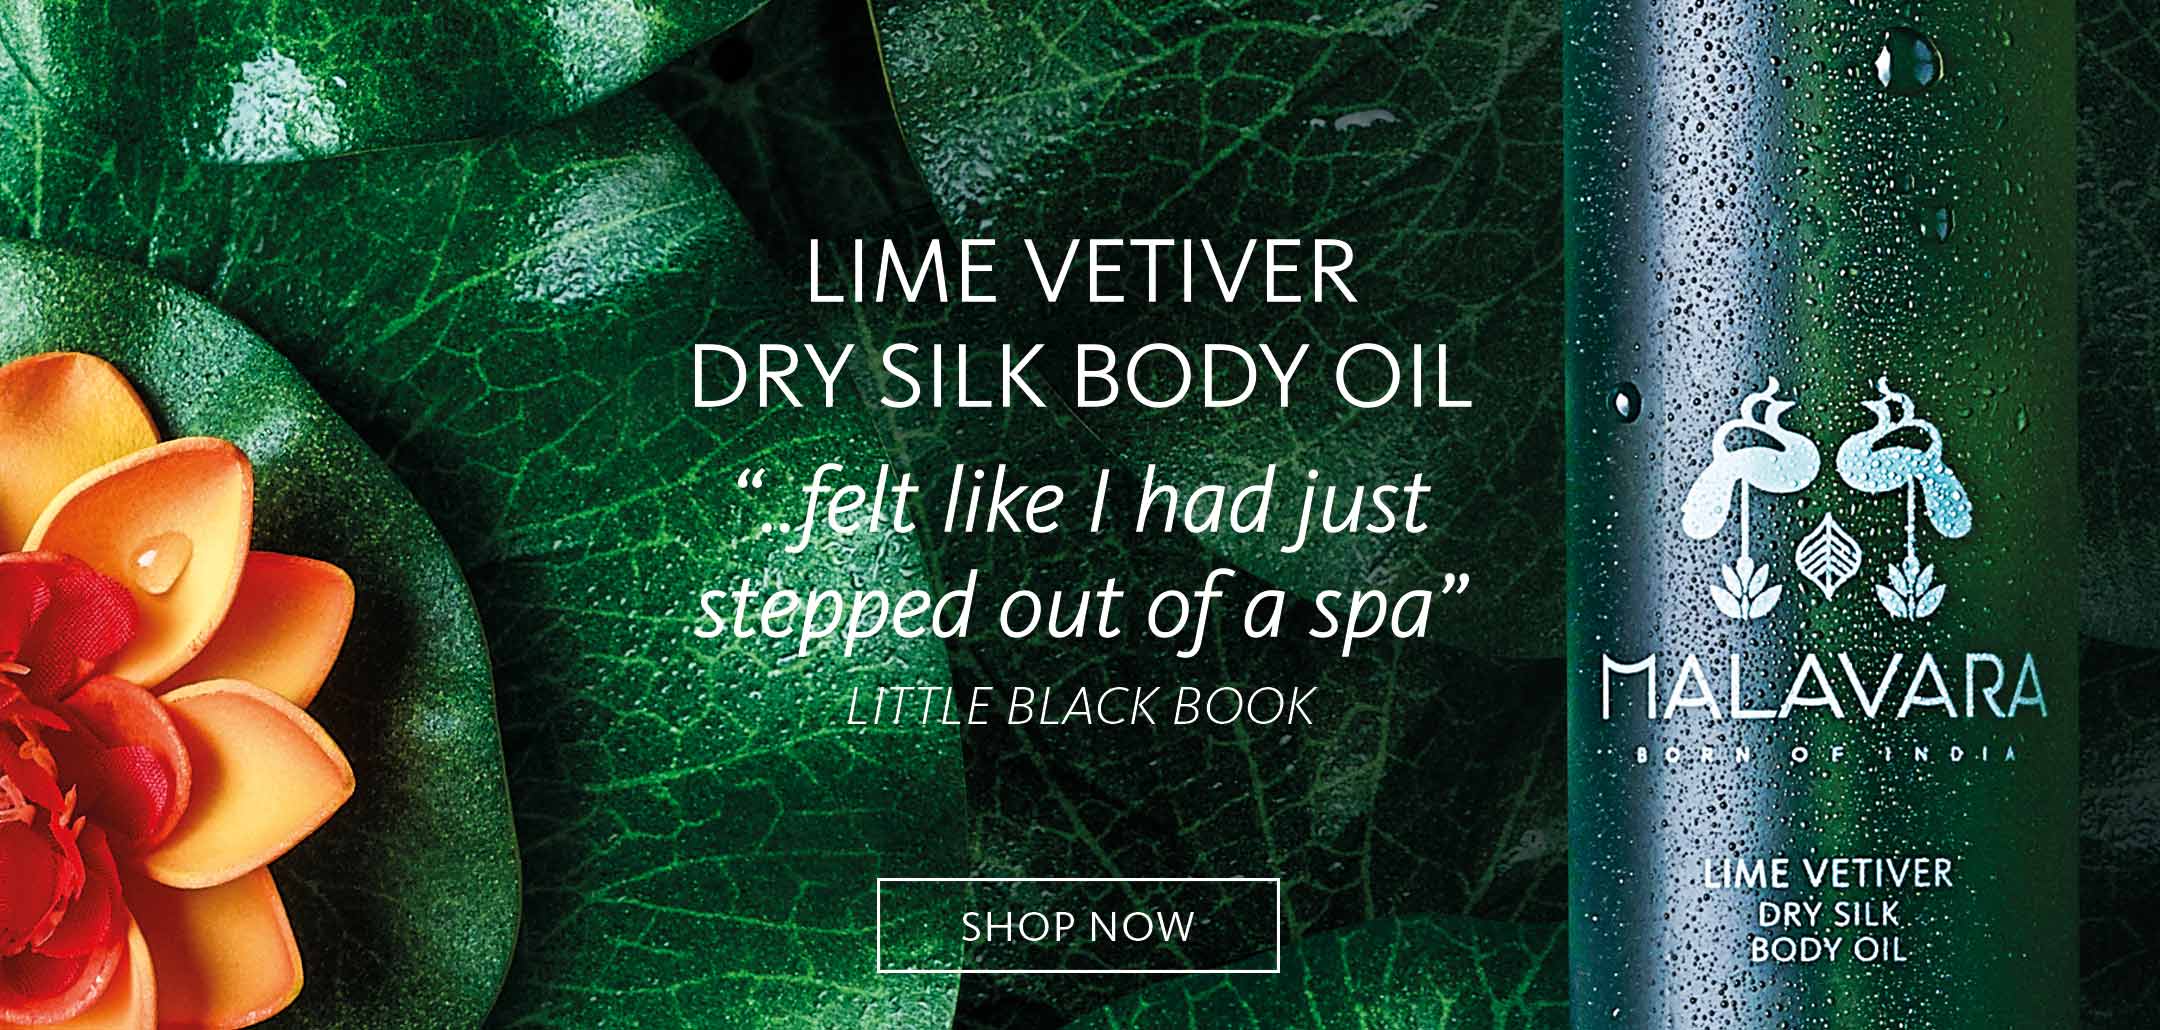 Malavara Lime Vetiver Dry Silk Body Oil